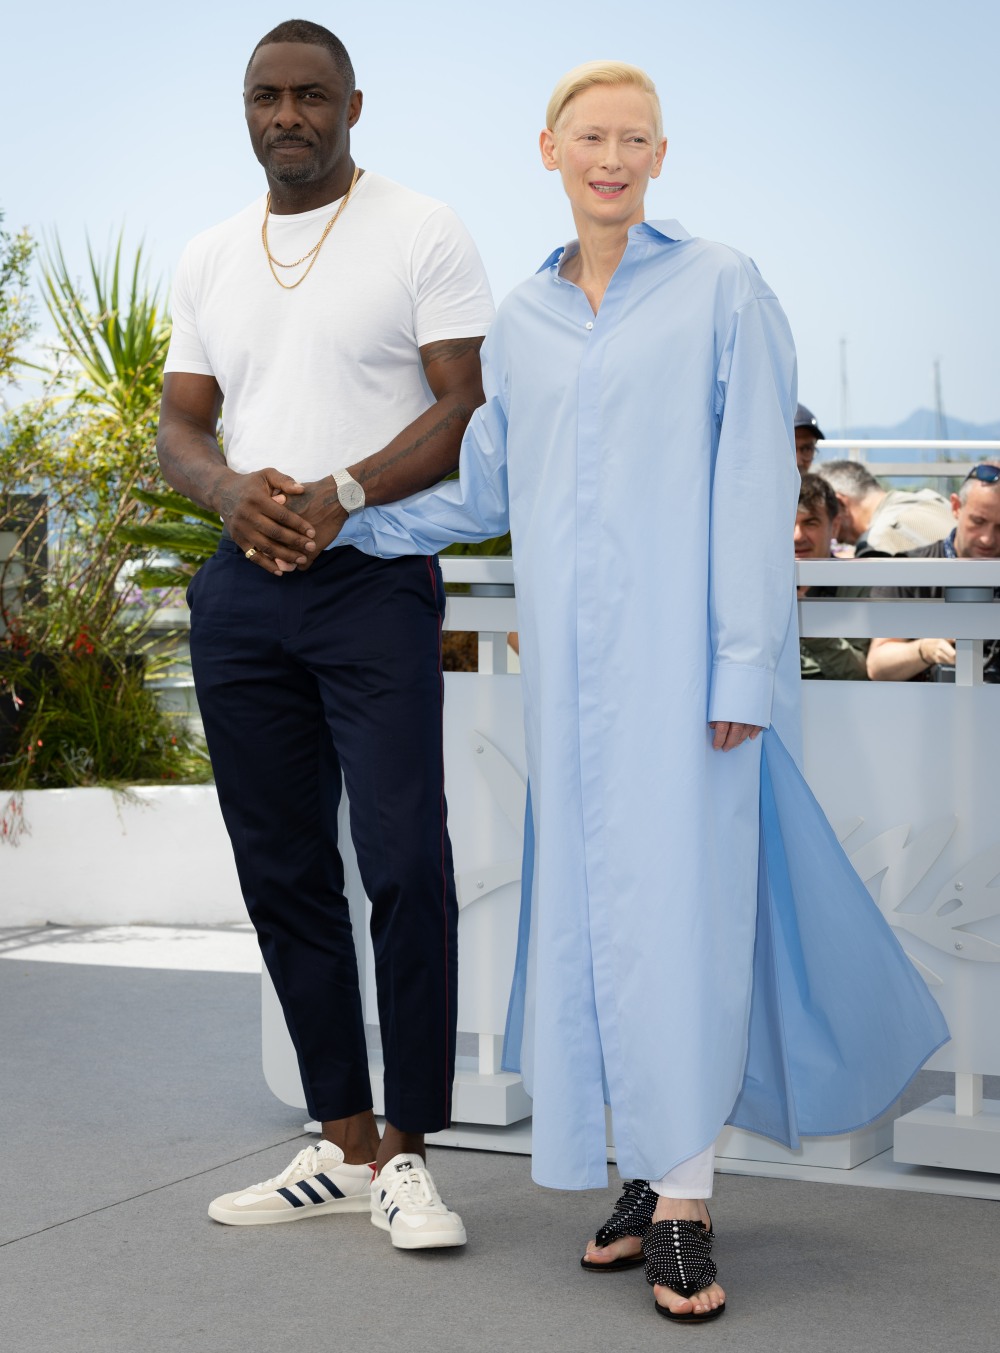 kaltak | Tilda Swinton, Cannes'da gerçek bir Chanel elbisesi giydi, uzaylı modası ya da başka bir şey yoktu.